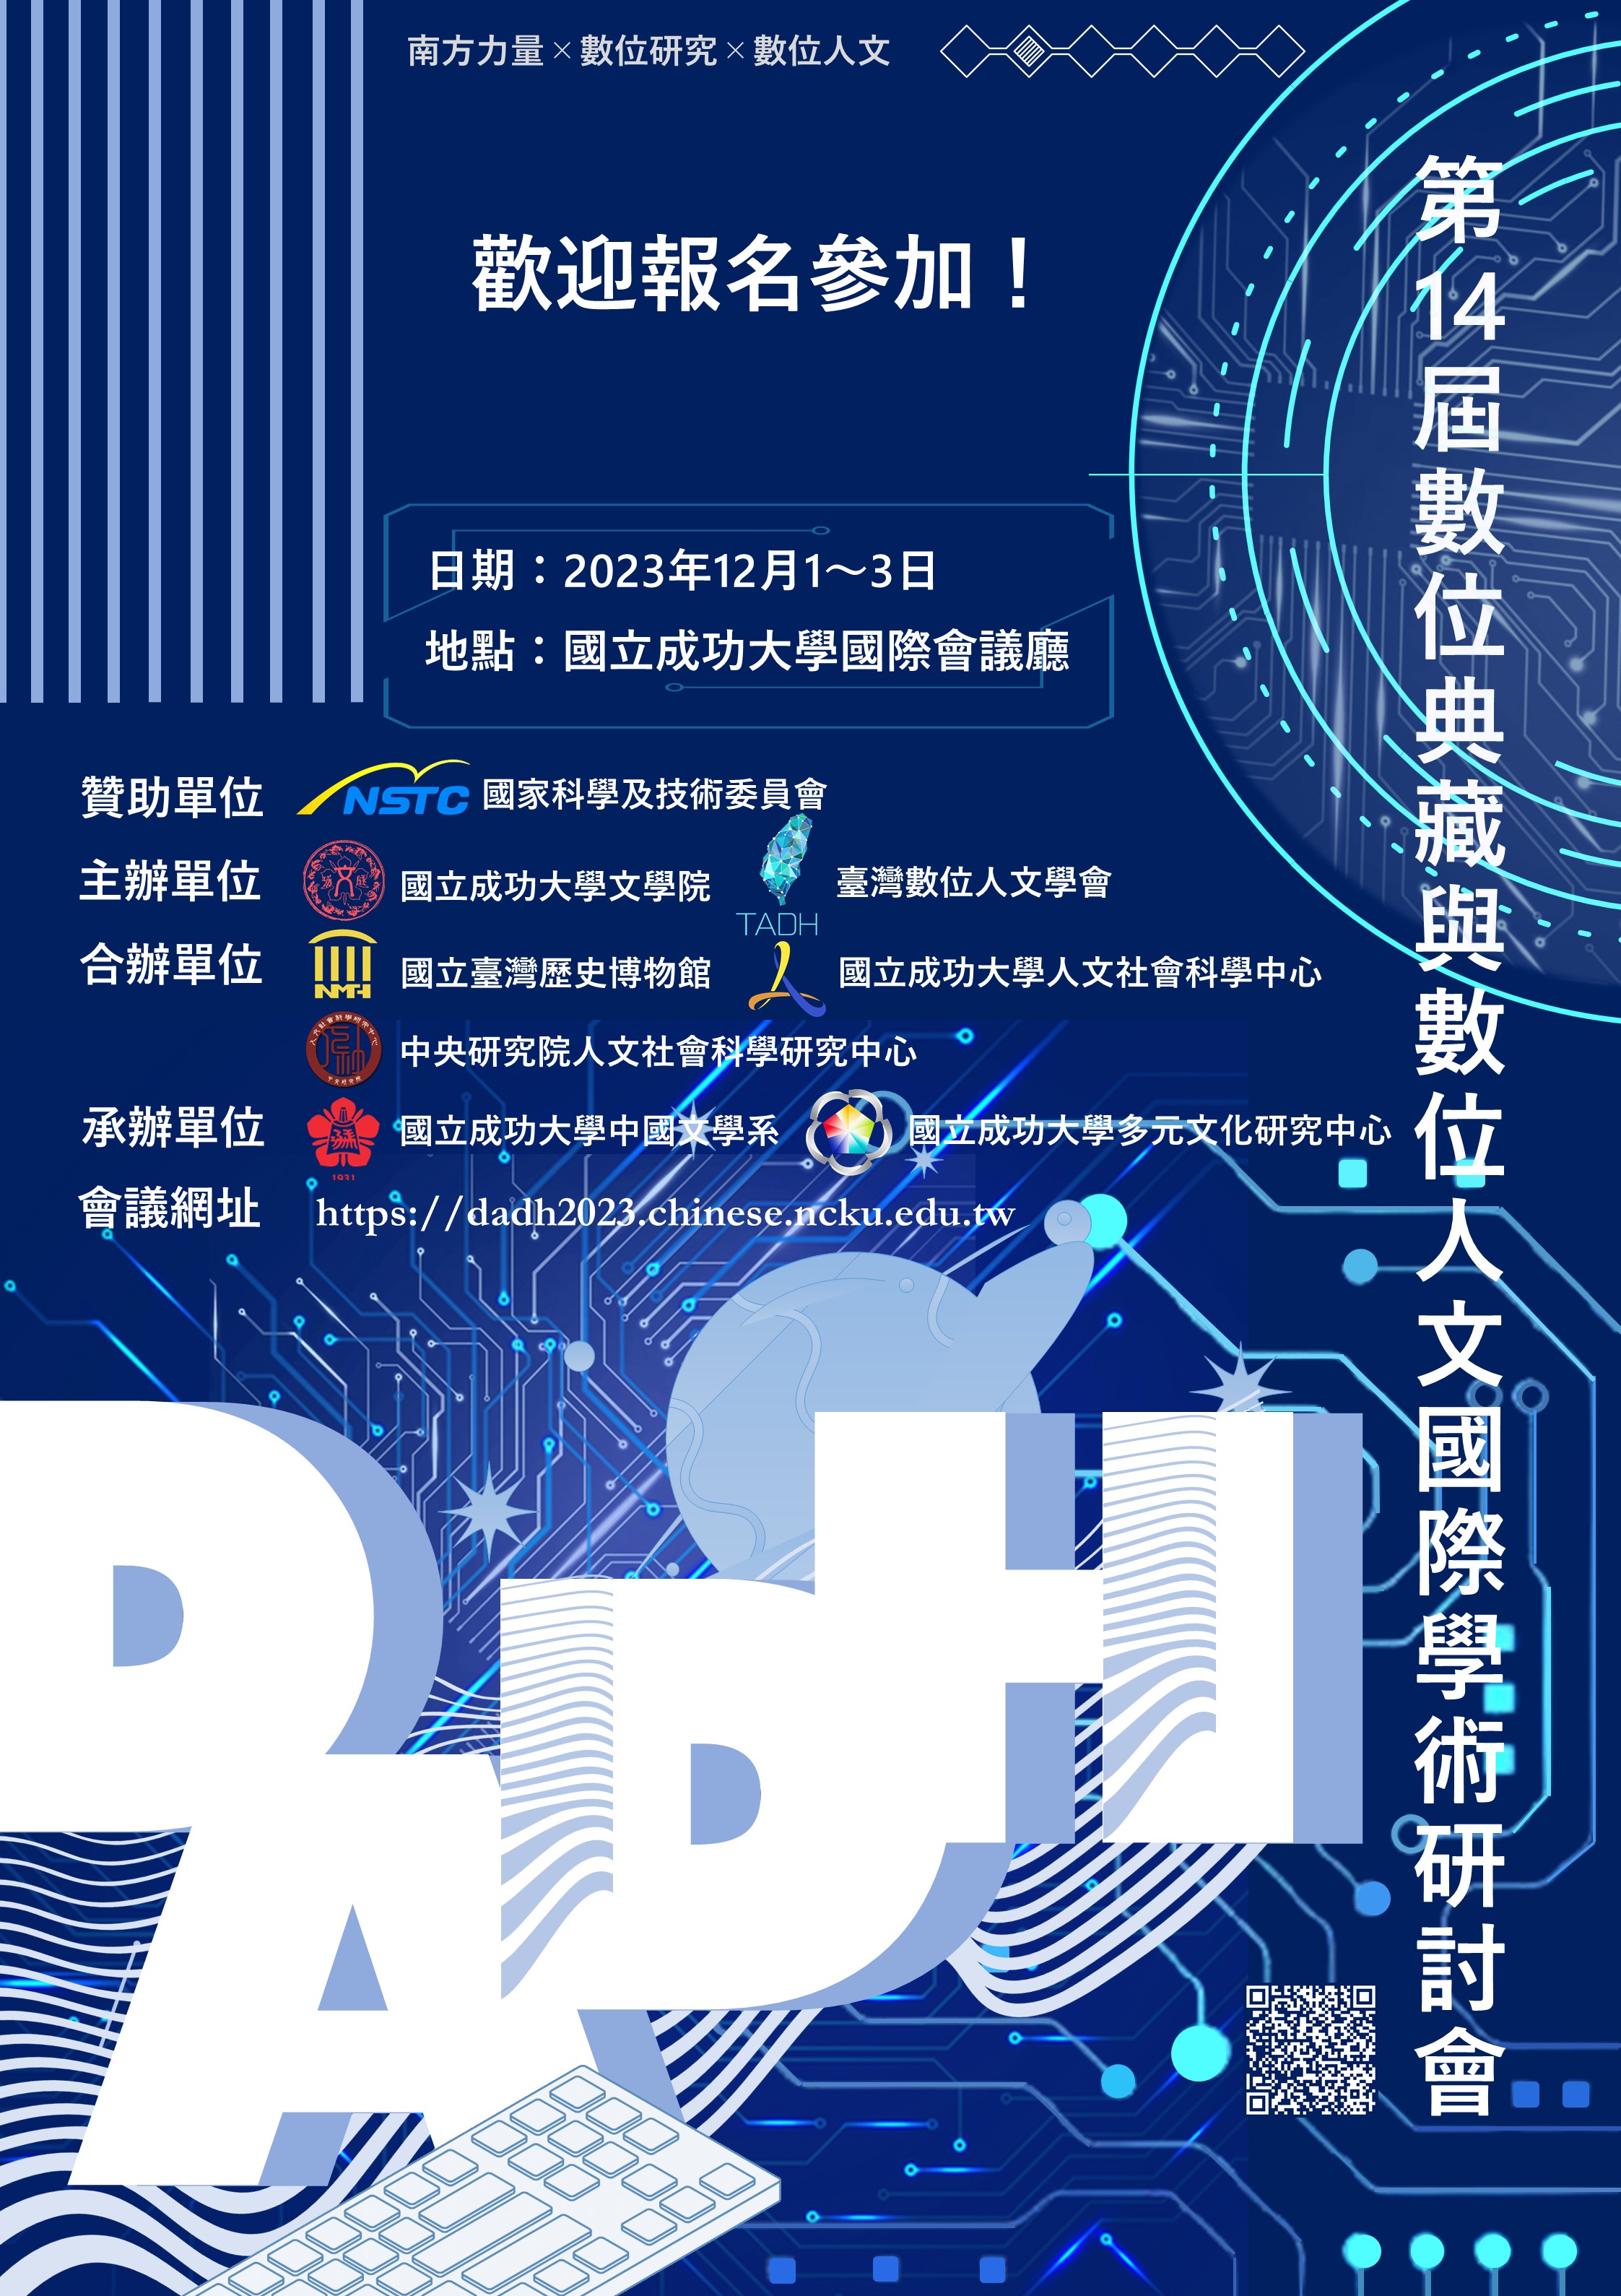 第十四屆數位典藏與數位人文國際研討會